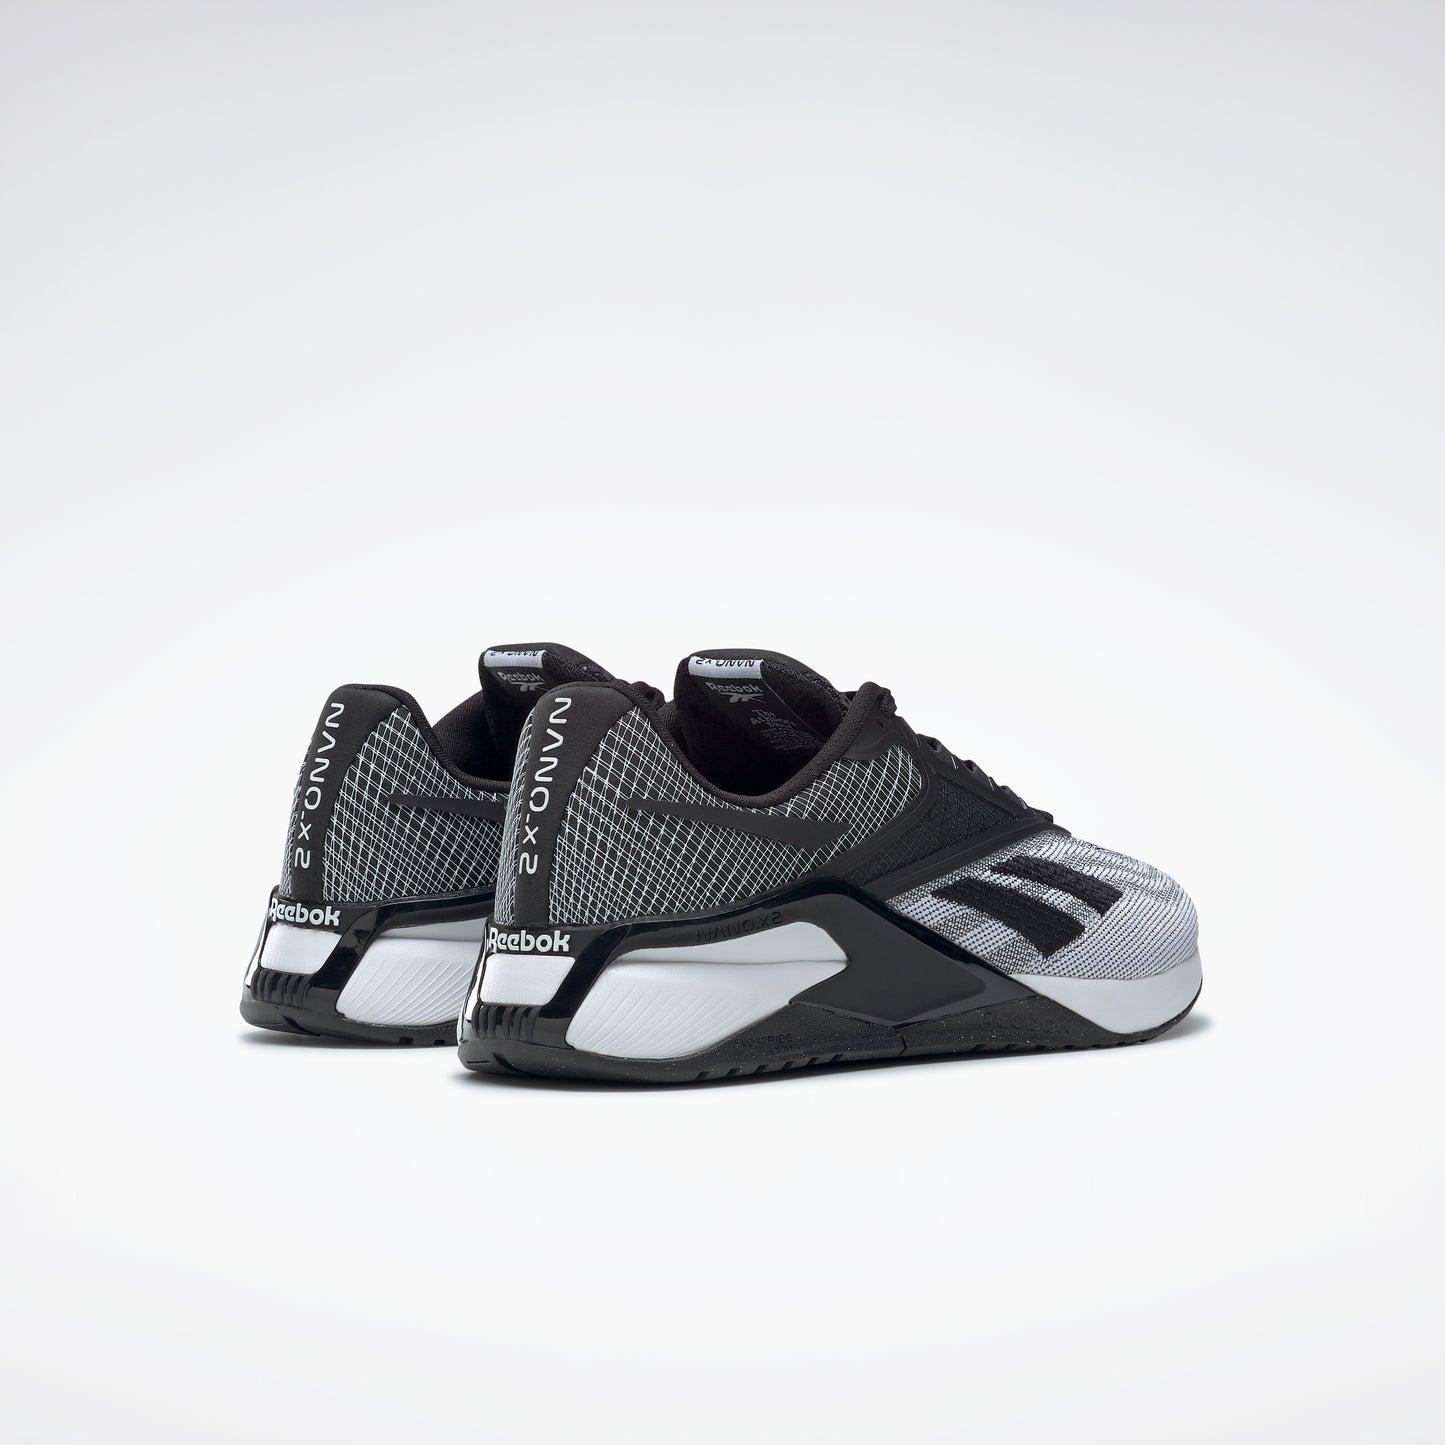 Reebok Footwear Women Reebok Nano X2 Shoes Ftwwht/Cblack/Pugry6